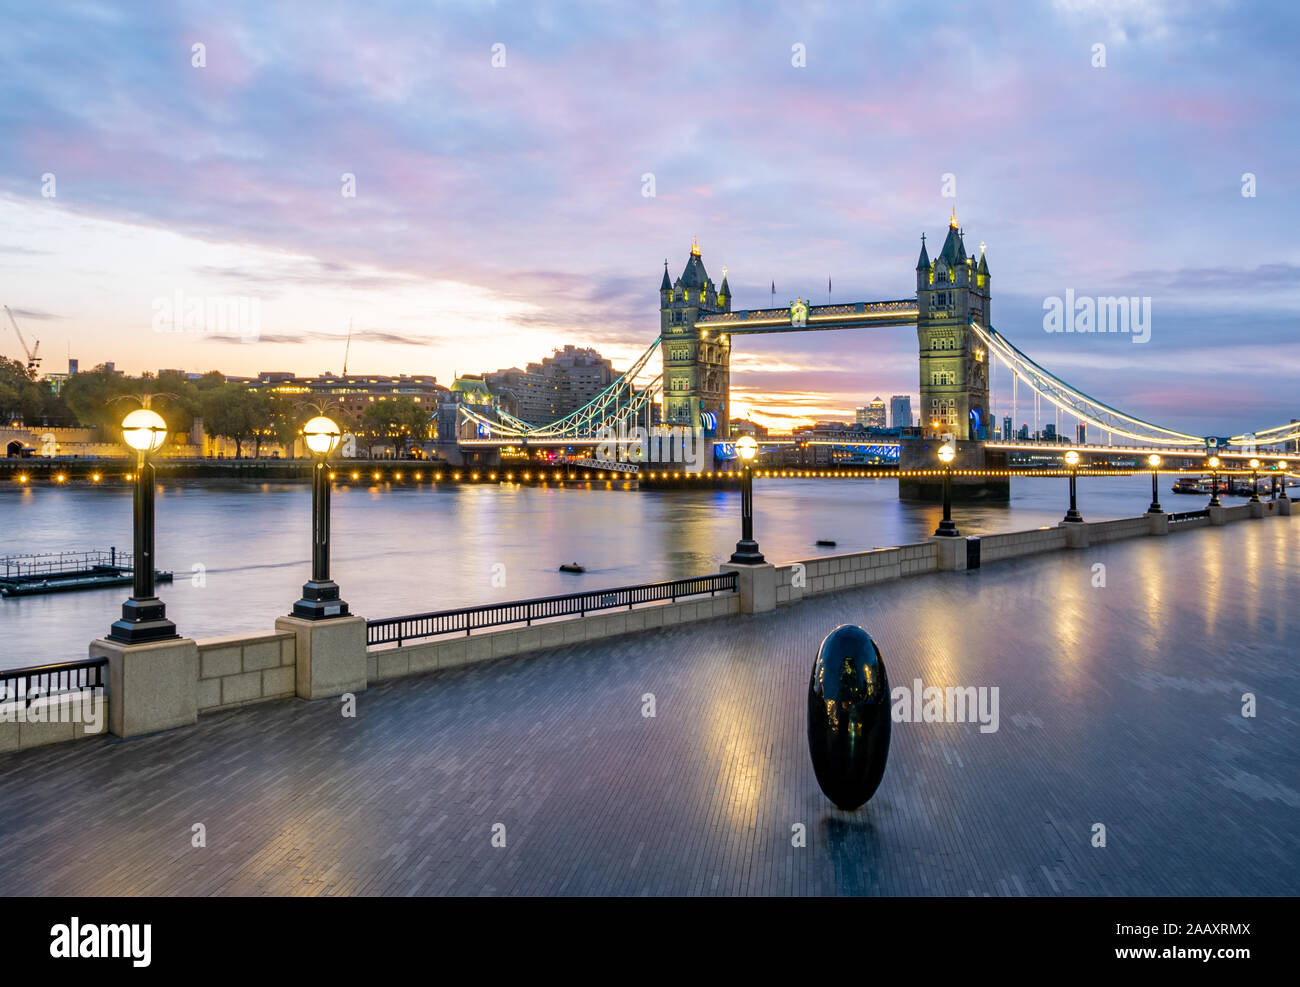 Londres, Inglaterra, Gran Bretaña - Octubre 29, 2019: Más Londres Riverside en Southbank con el famoso Puente de la torre cruzando el río Támesis temprano en t Foto de stock